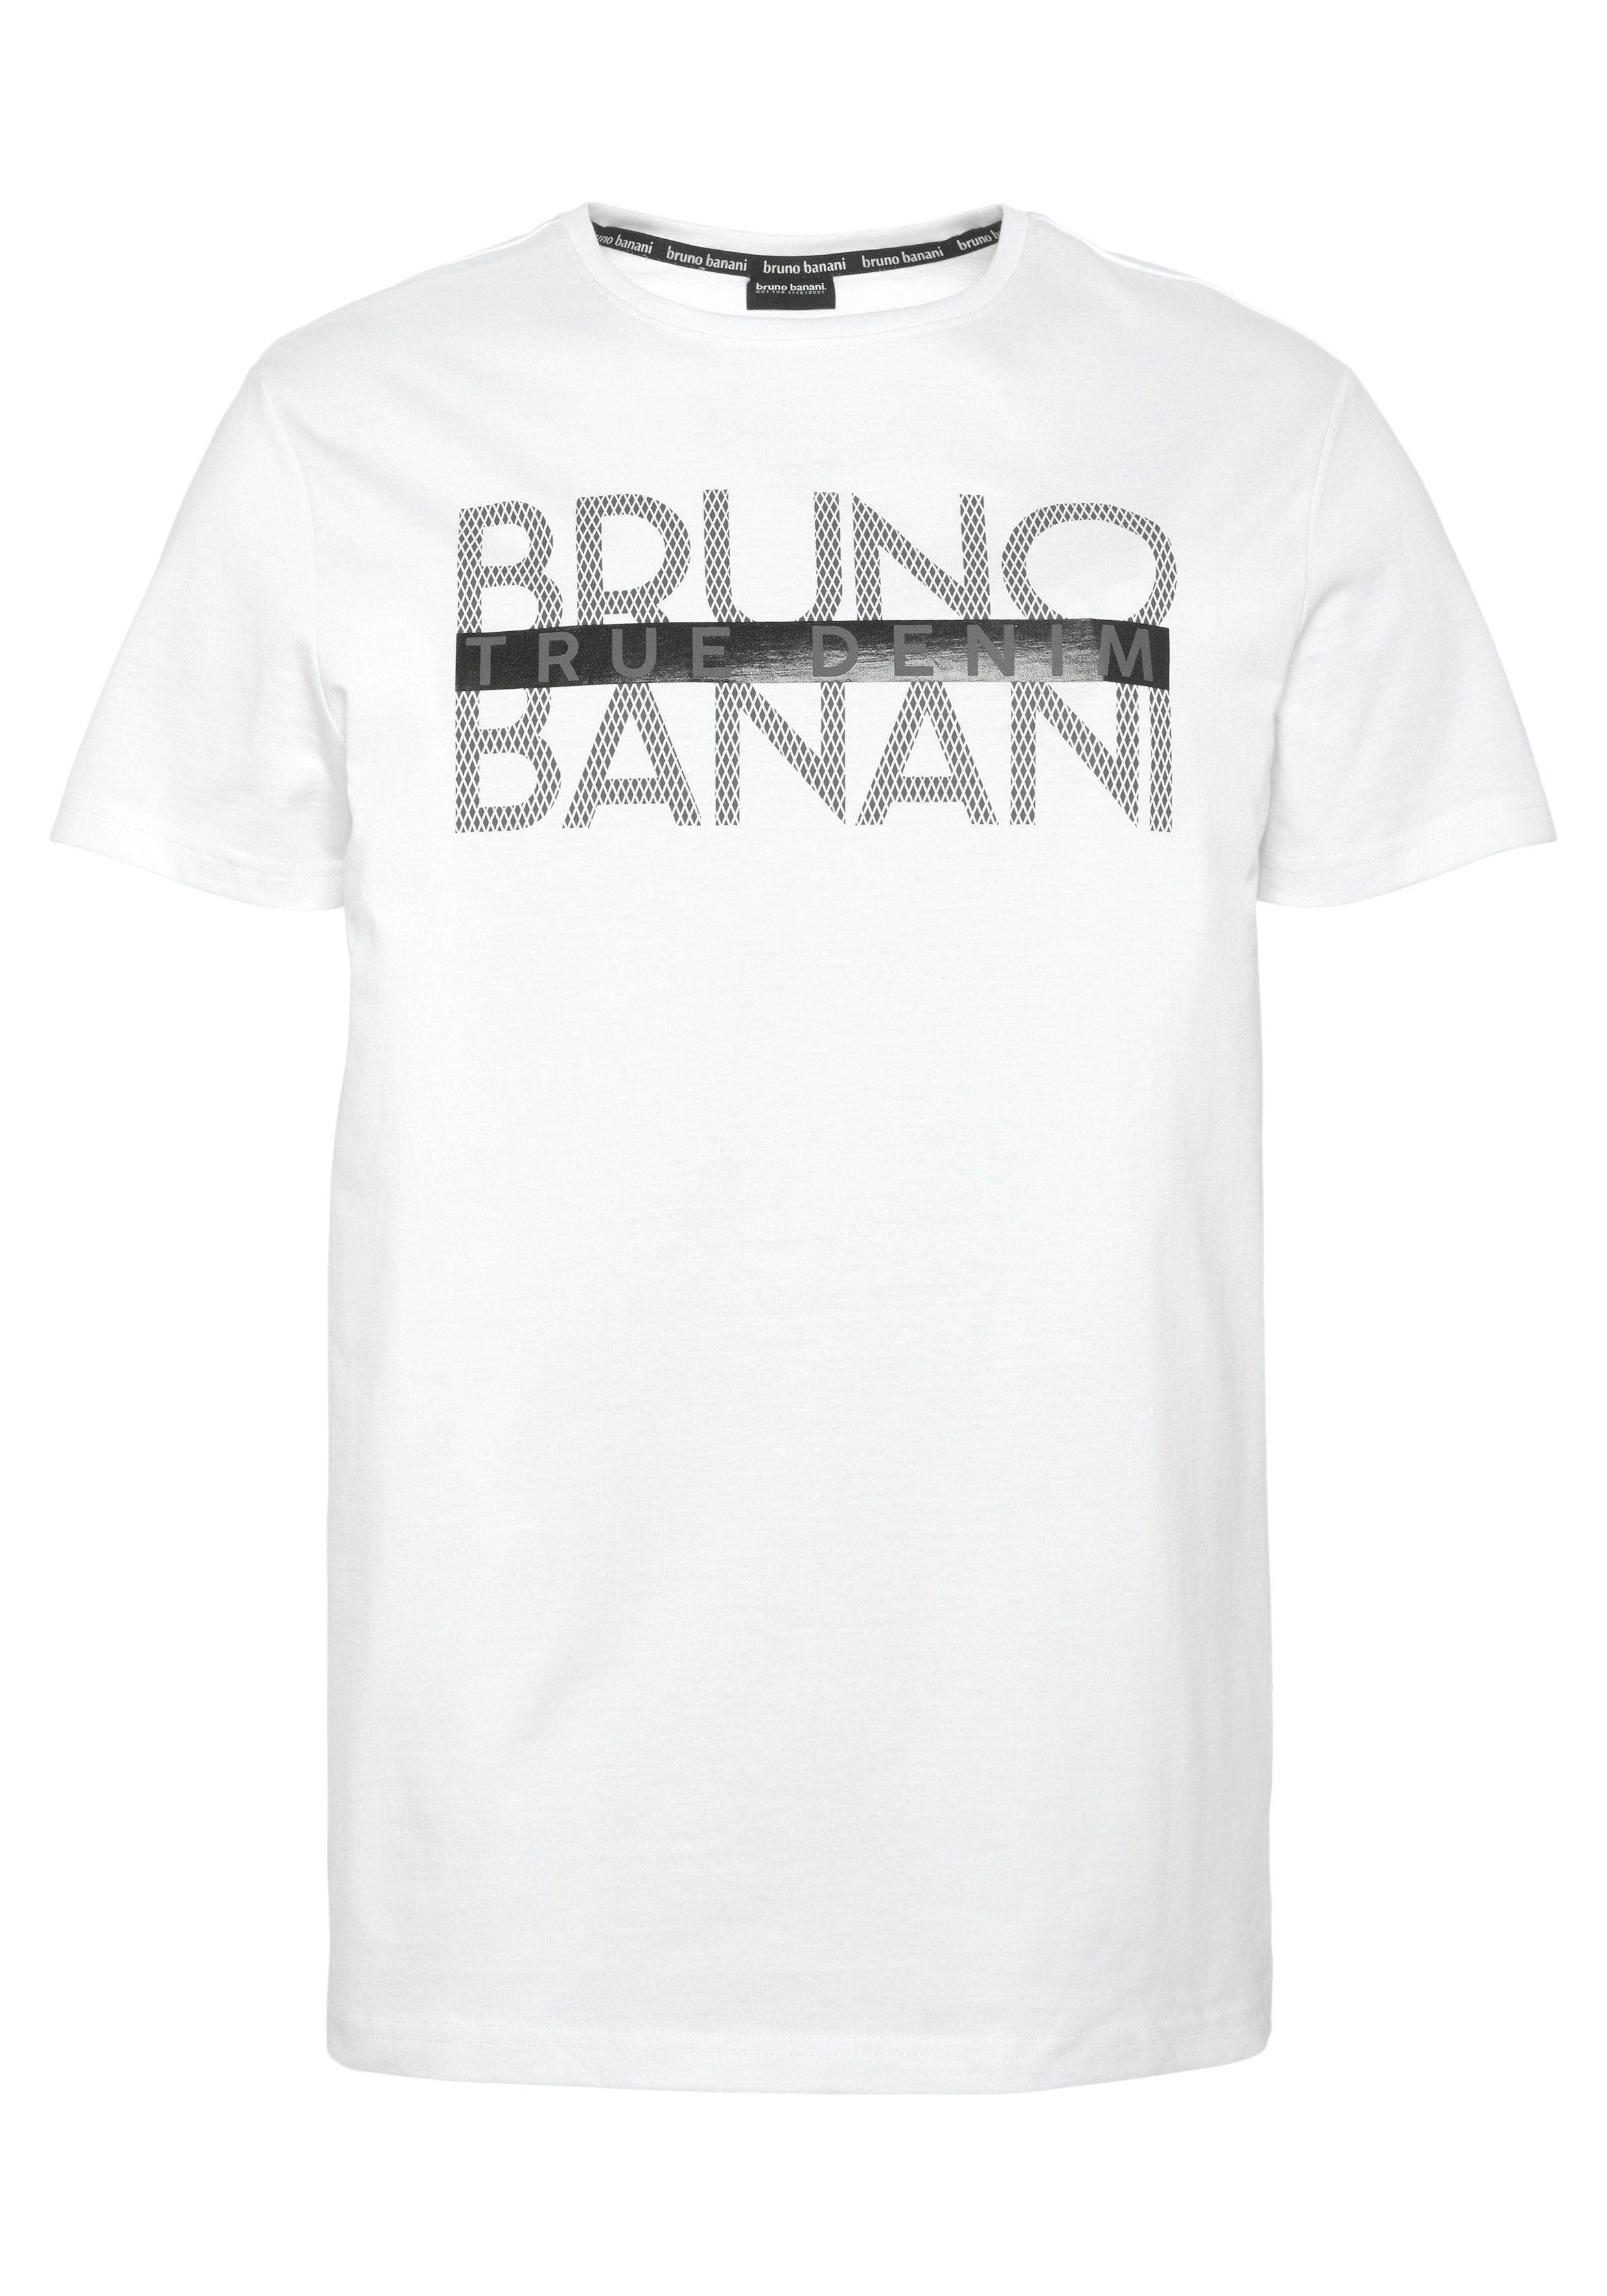 glänzendem T-Shirt Banani Print Bruno weiß mit